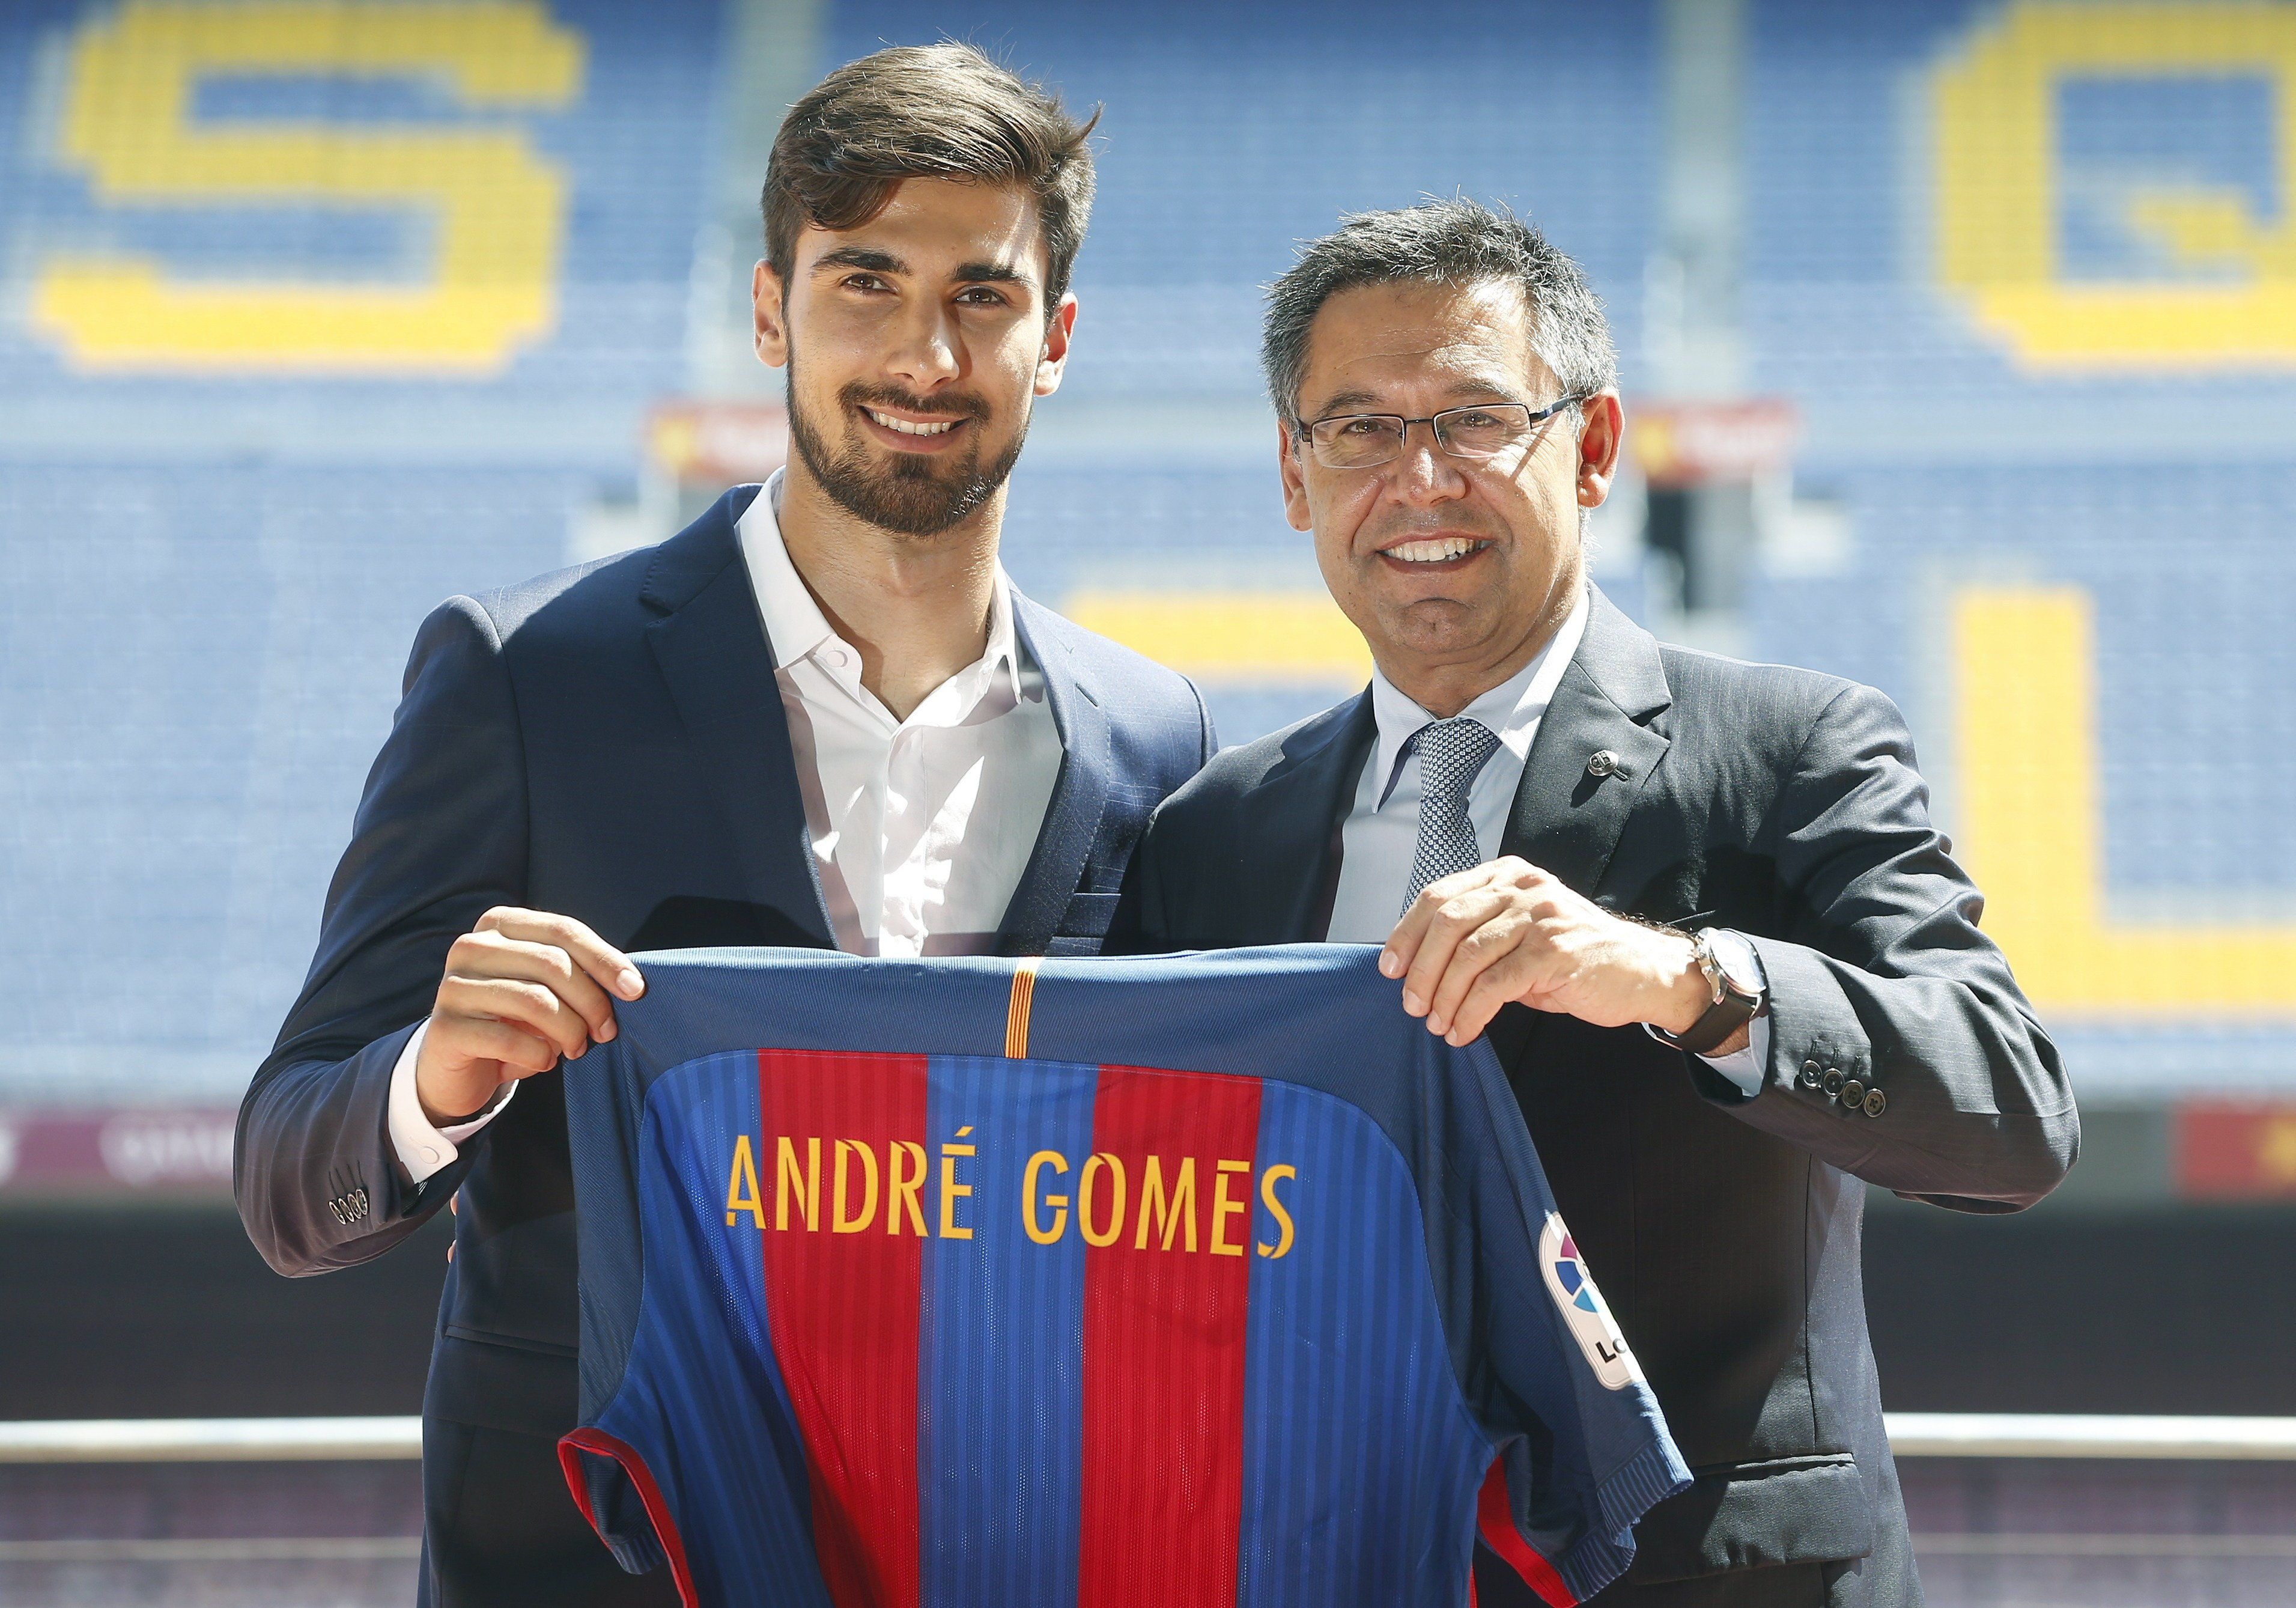 André Gomes: "He venido al Barça porque es el mejor"